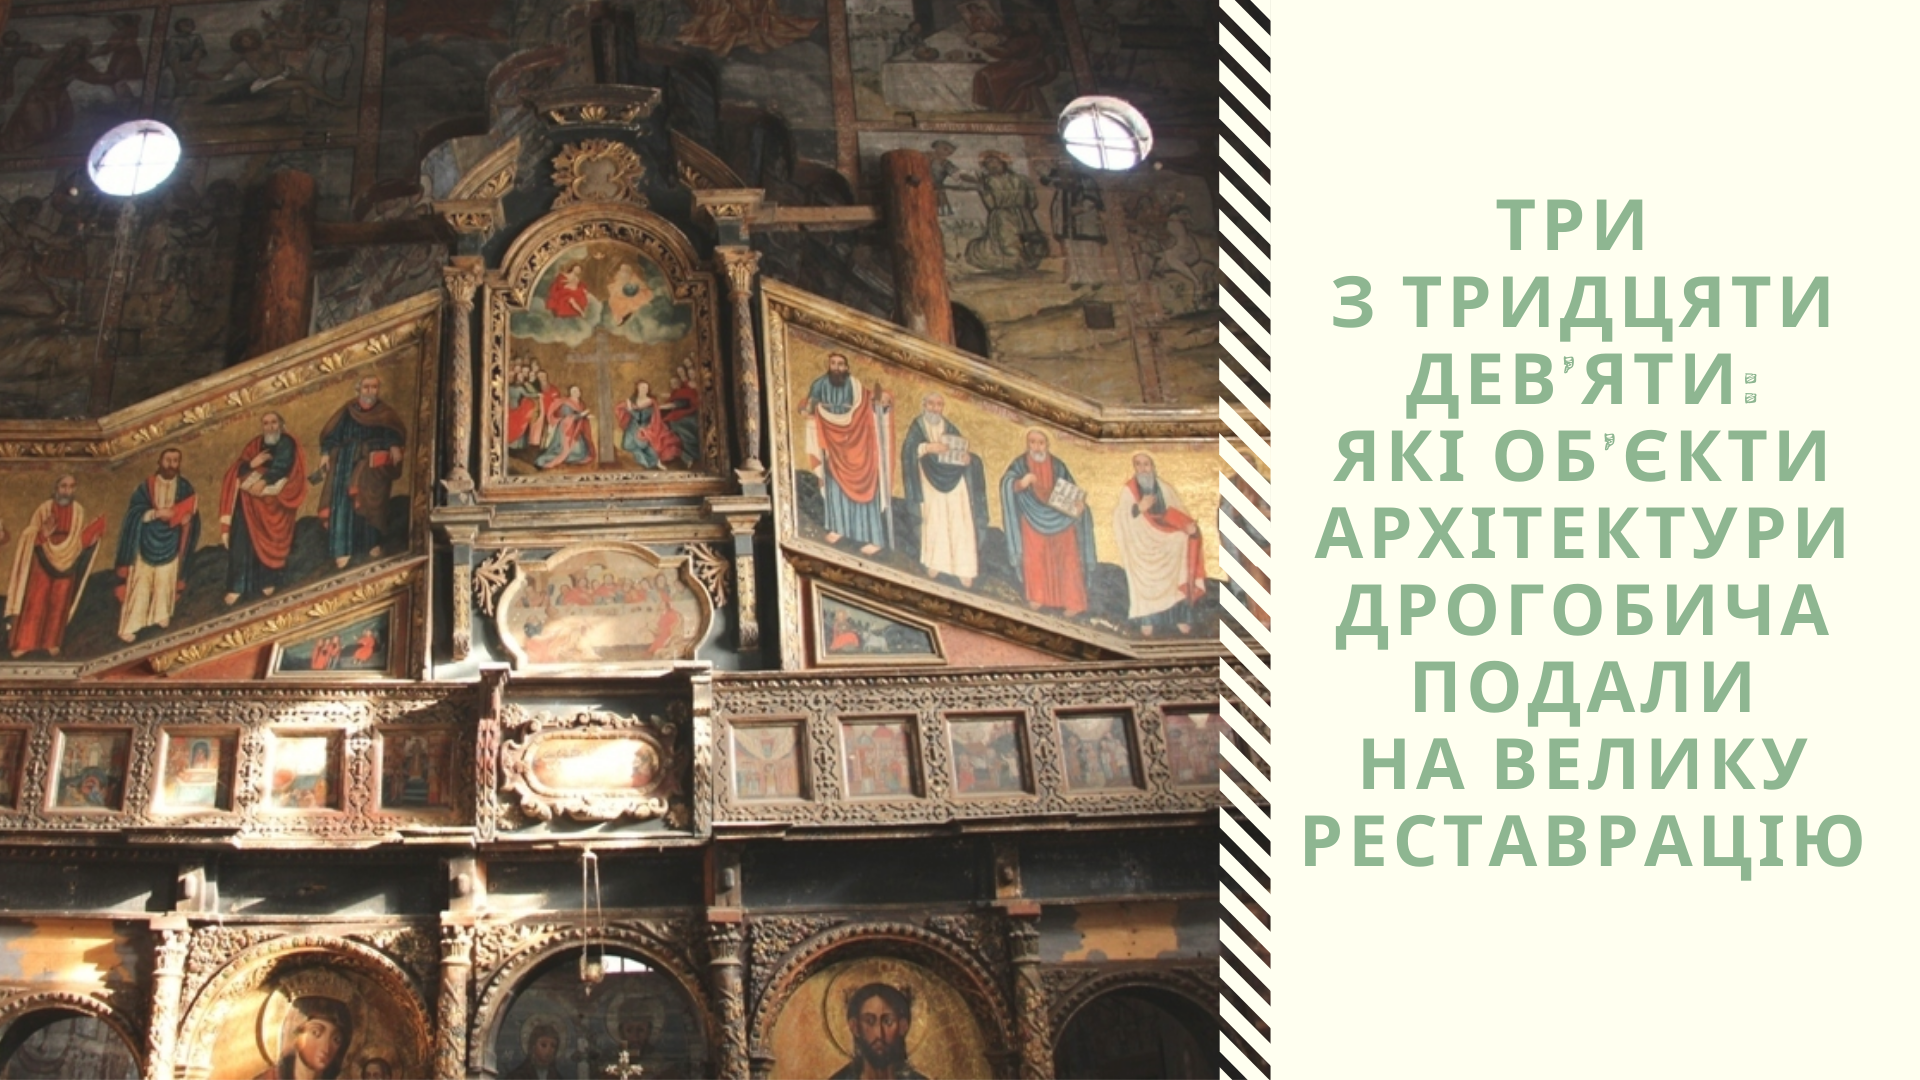 Три з тридцяти дев’яти: Які об’єкти архітектури Дрогобича подали на Велику реставрацію